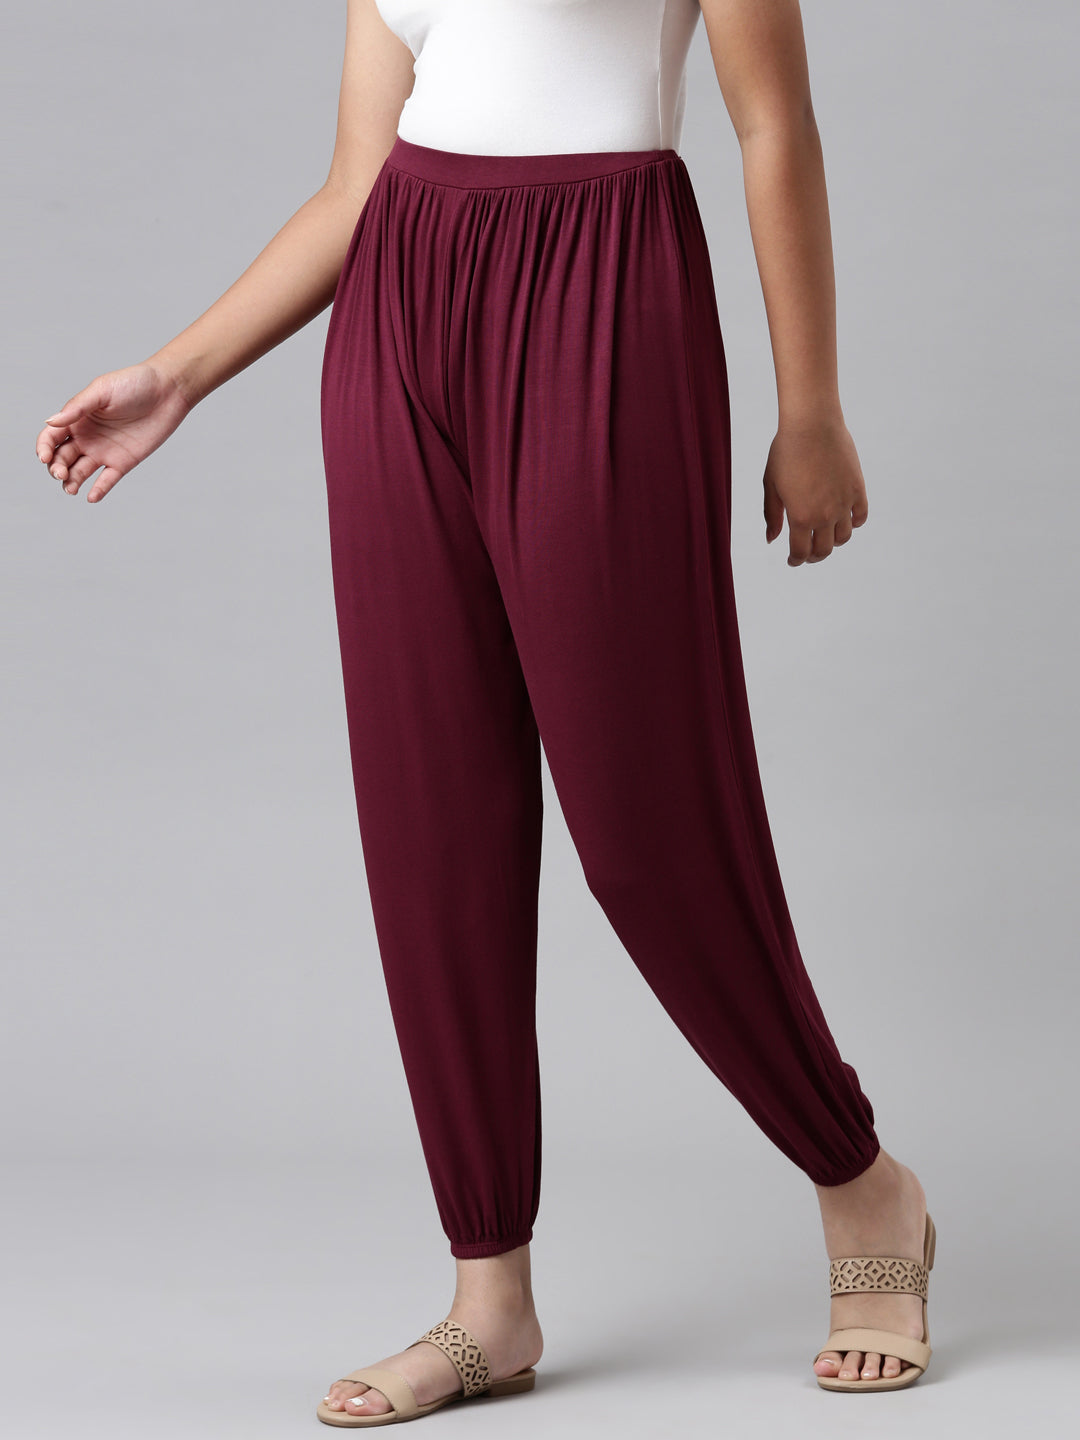 harem pants for girls Capri yoga pants plus size pants